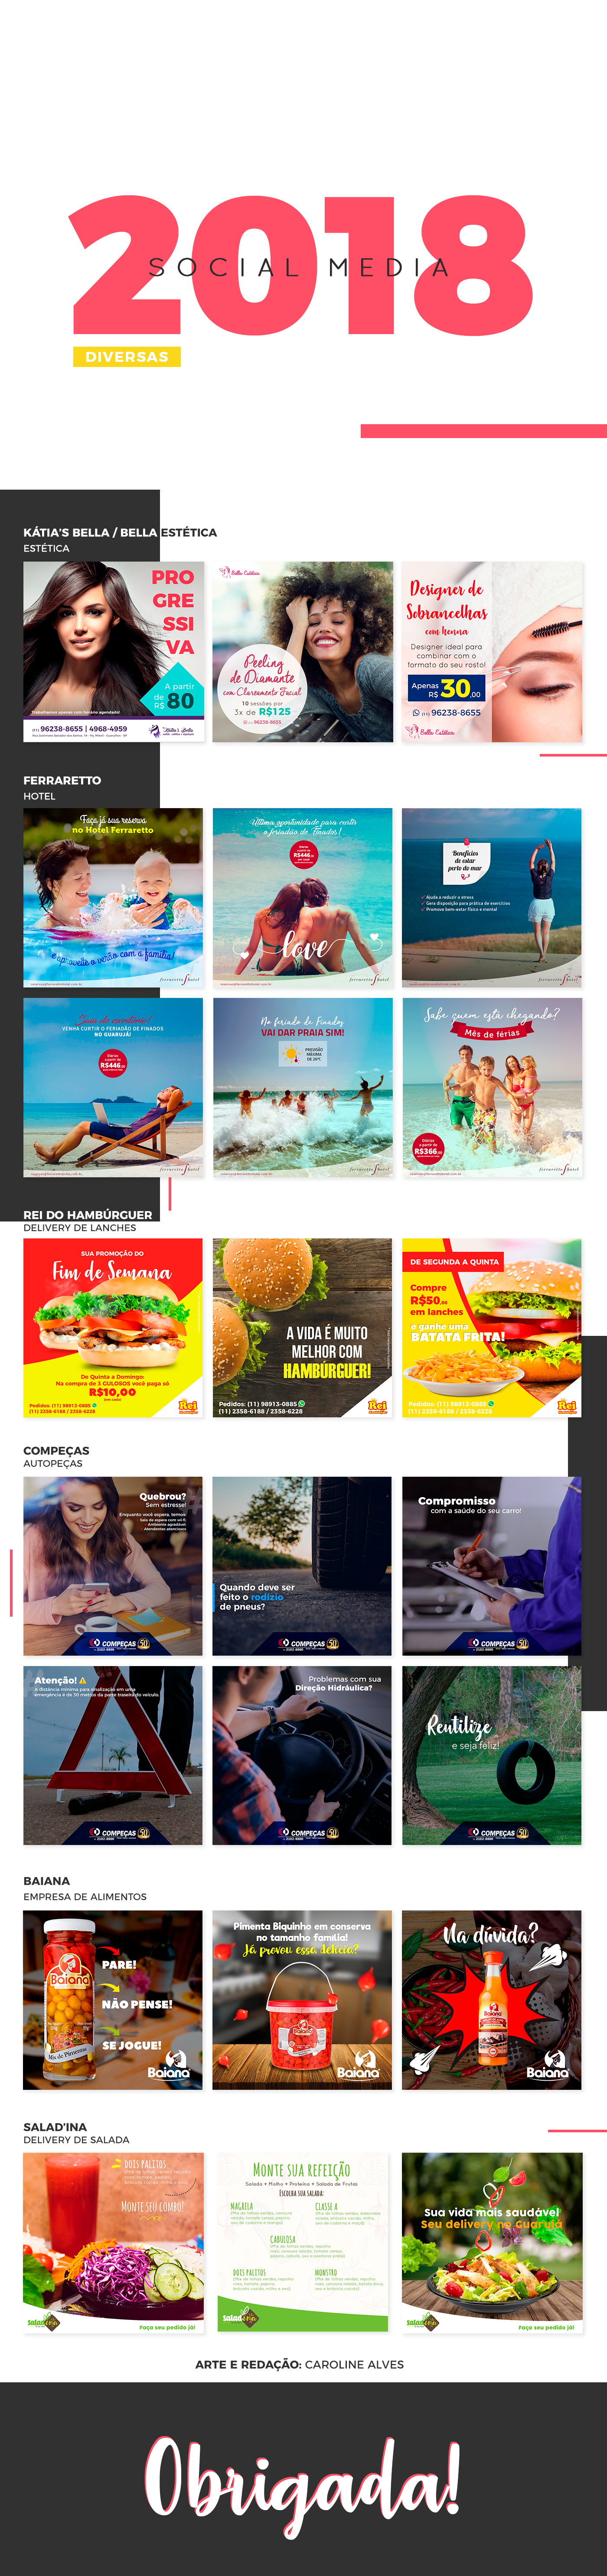 facebook mídias sociais social media Redes Sociais fitness estética hotel hamburguer autopeças instagram